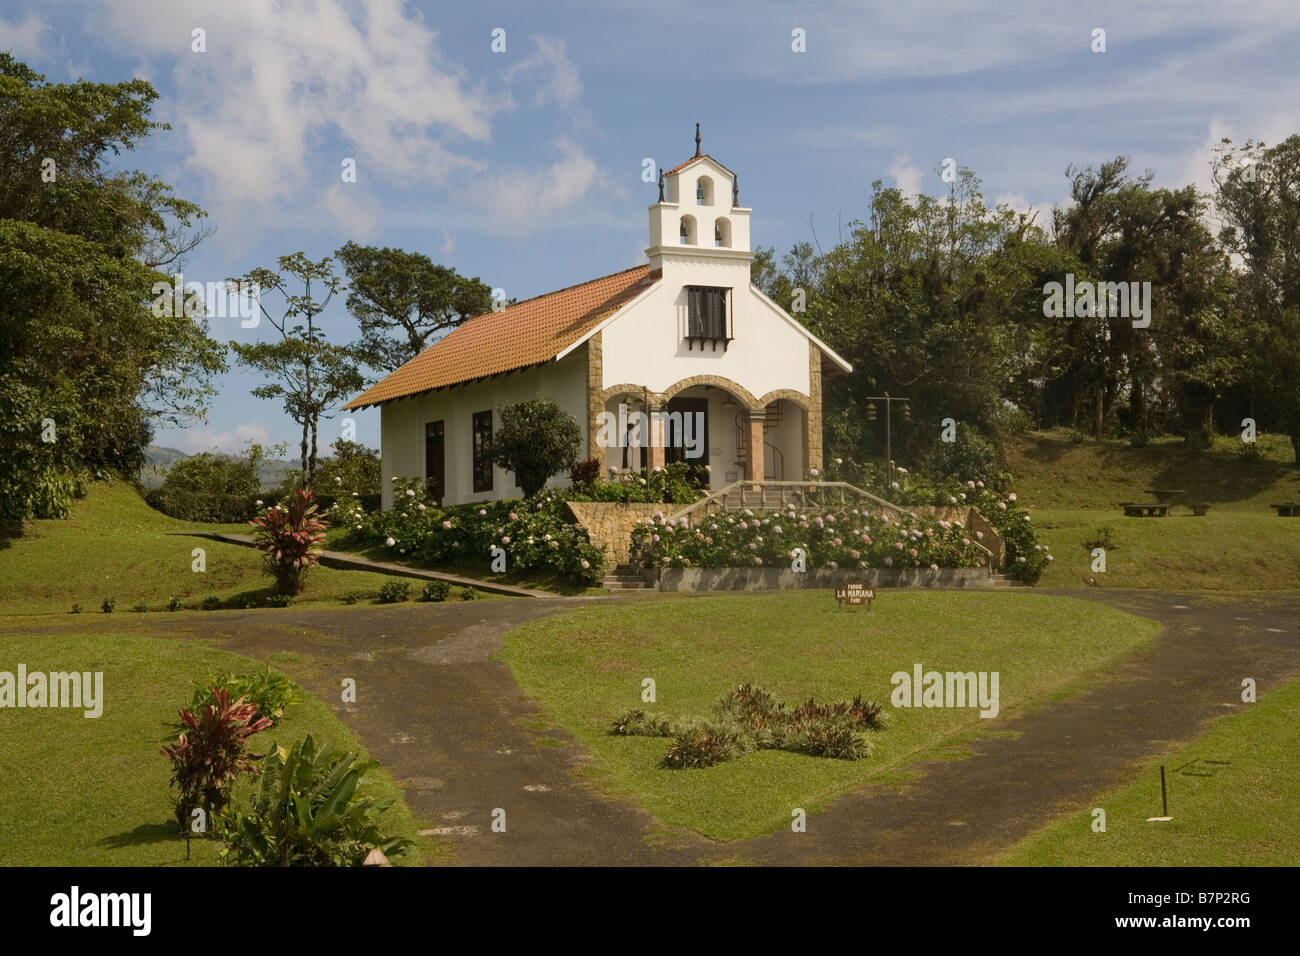 Costa Rica Villa Blanca, Mariana chapel Stock Photo